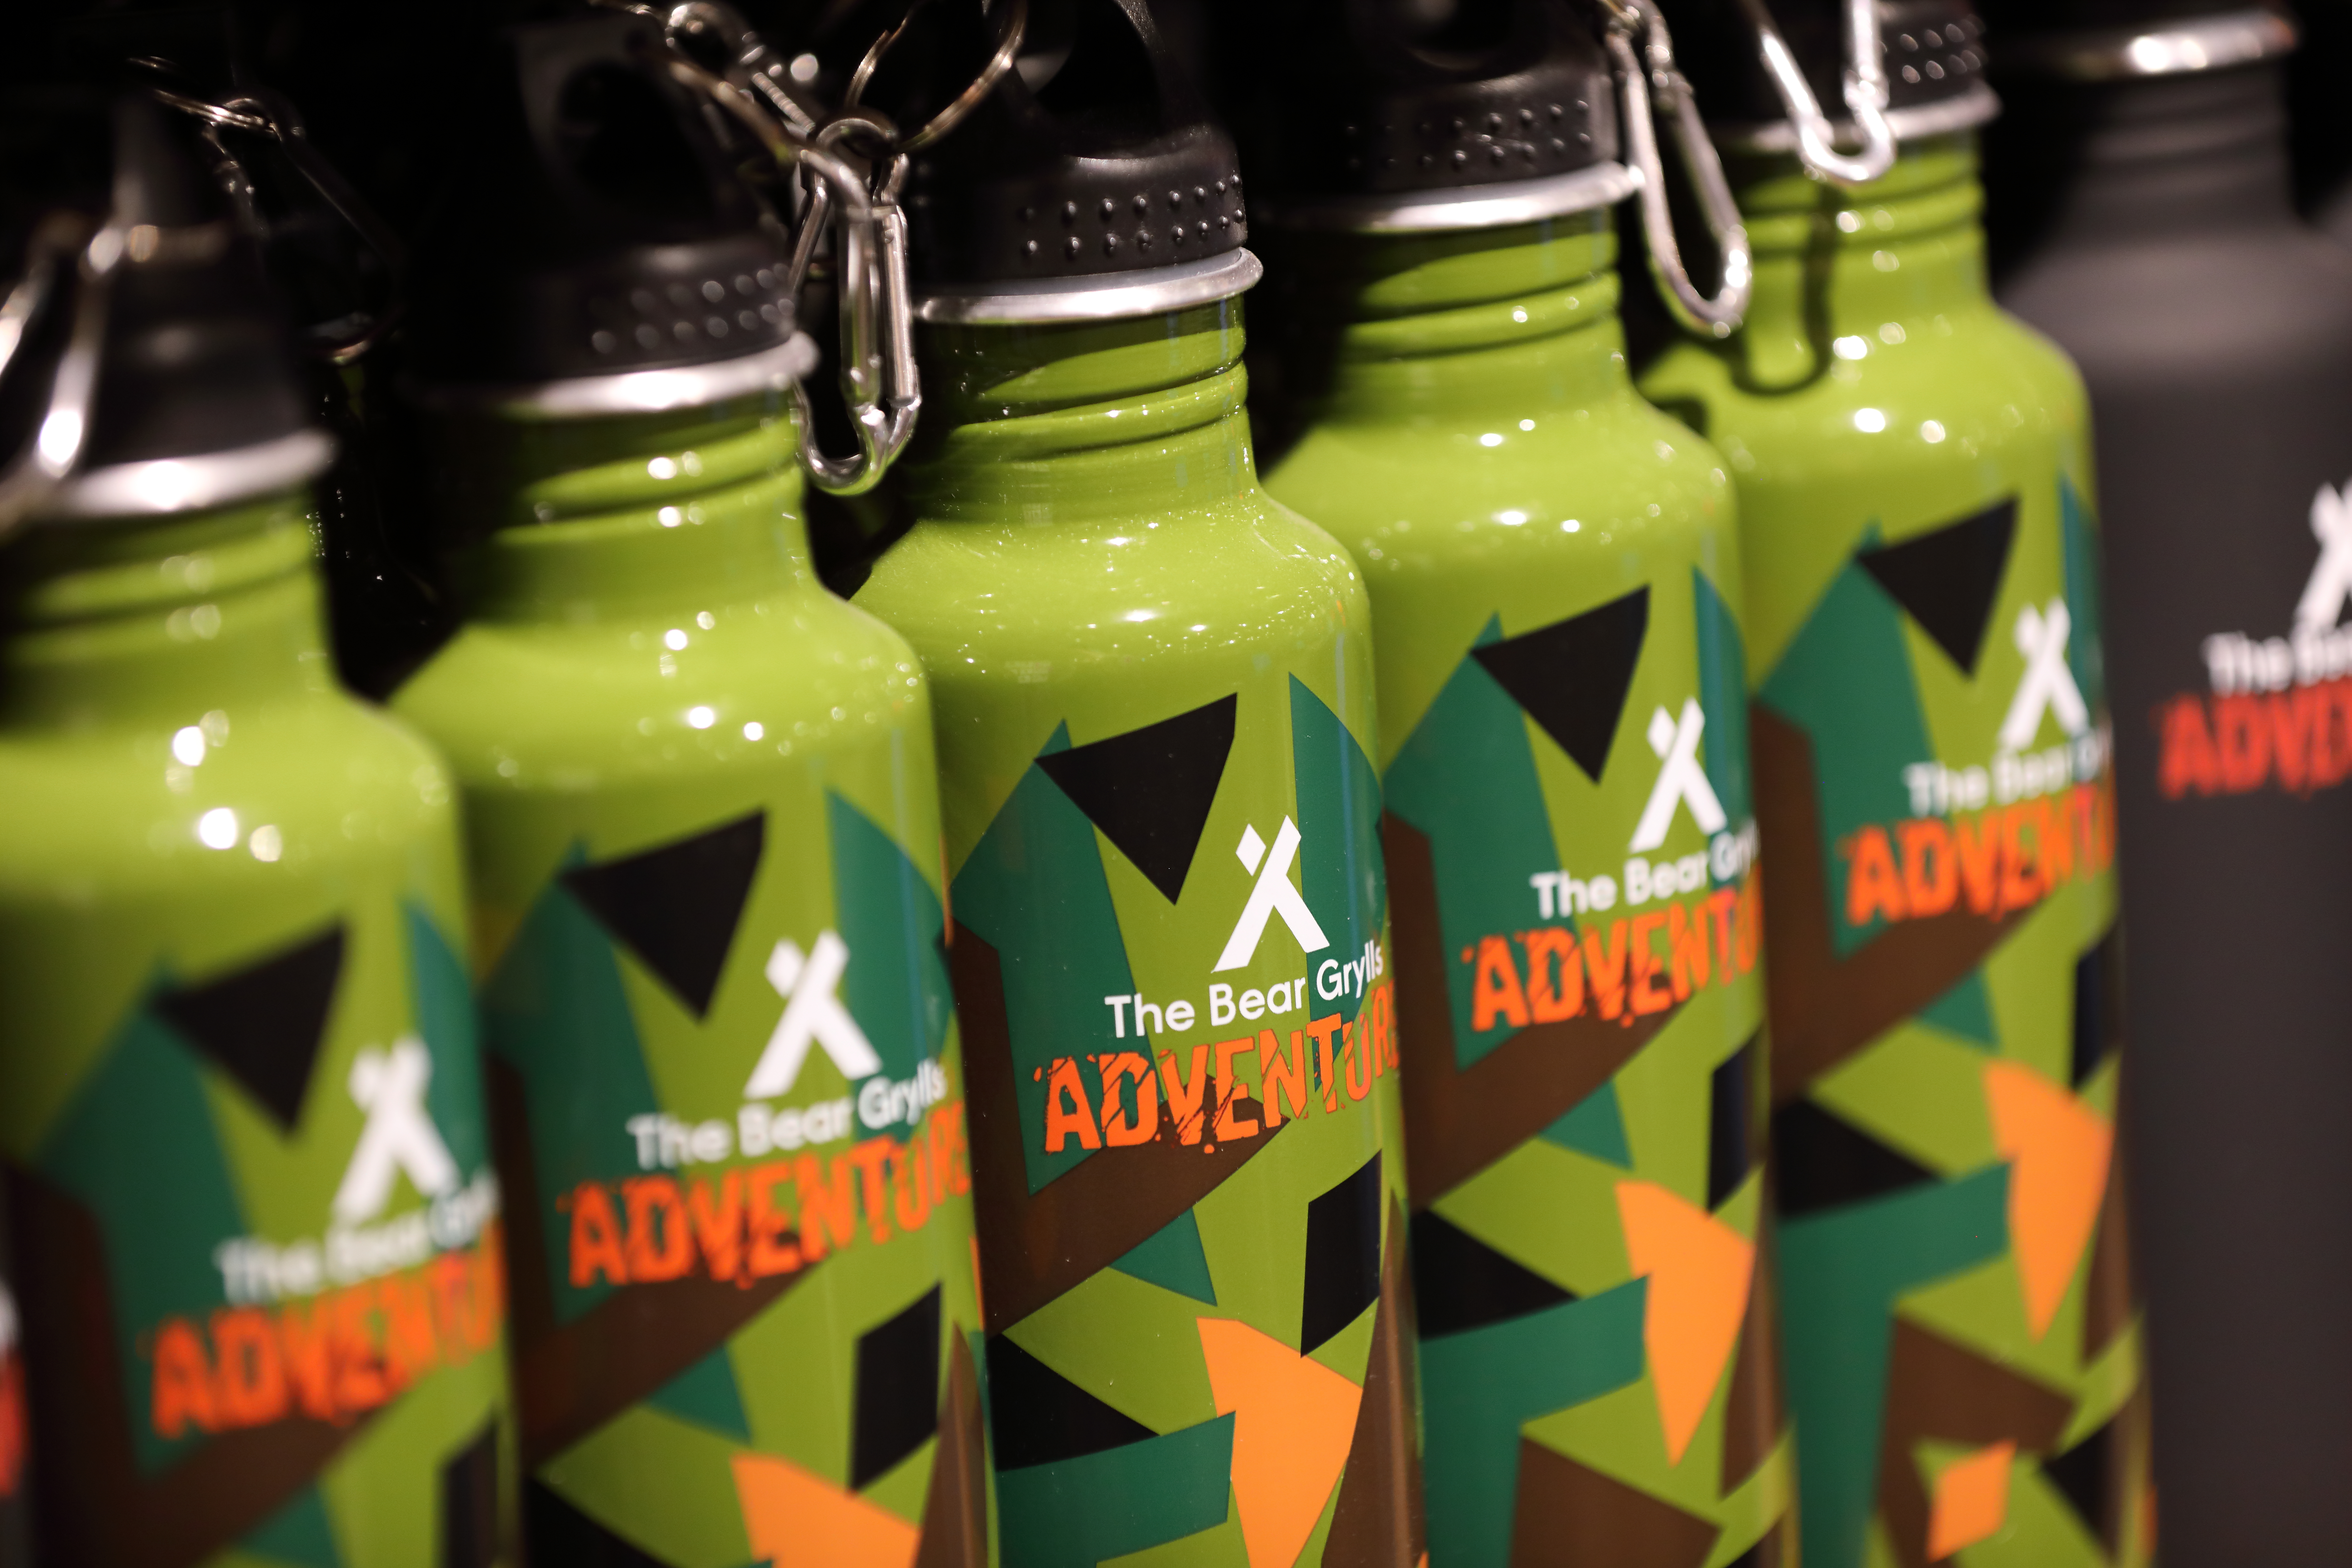 The Bear Grylls Adventure Retail Shop metal water bottles